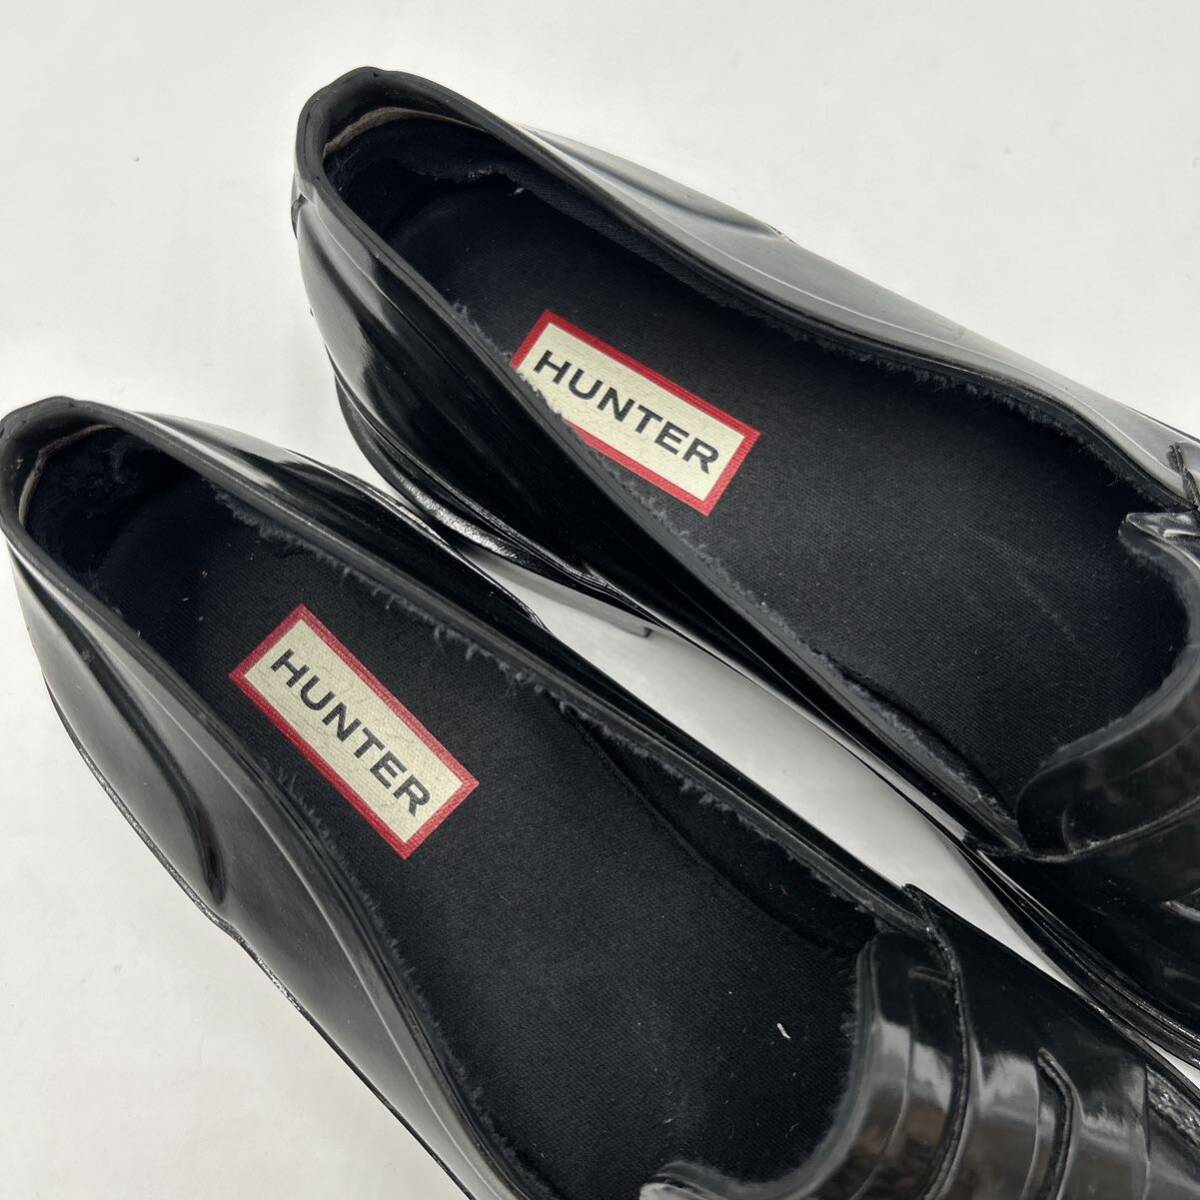 E # надеть обувь ощущение выдающийся \' совершенно водонепроницаемый \' HUNTER Hunter Raver материалы монета Loafer UK6 25cm унисекс для мужчин и женщин обувь BLACK чёрный серия 